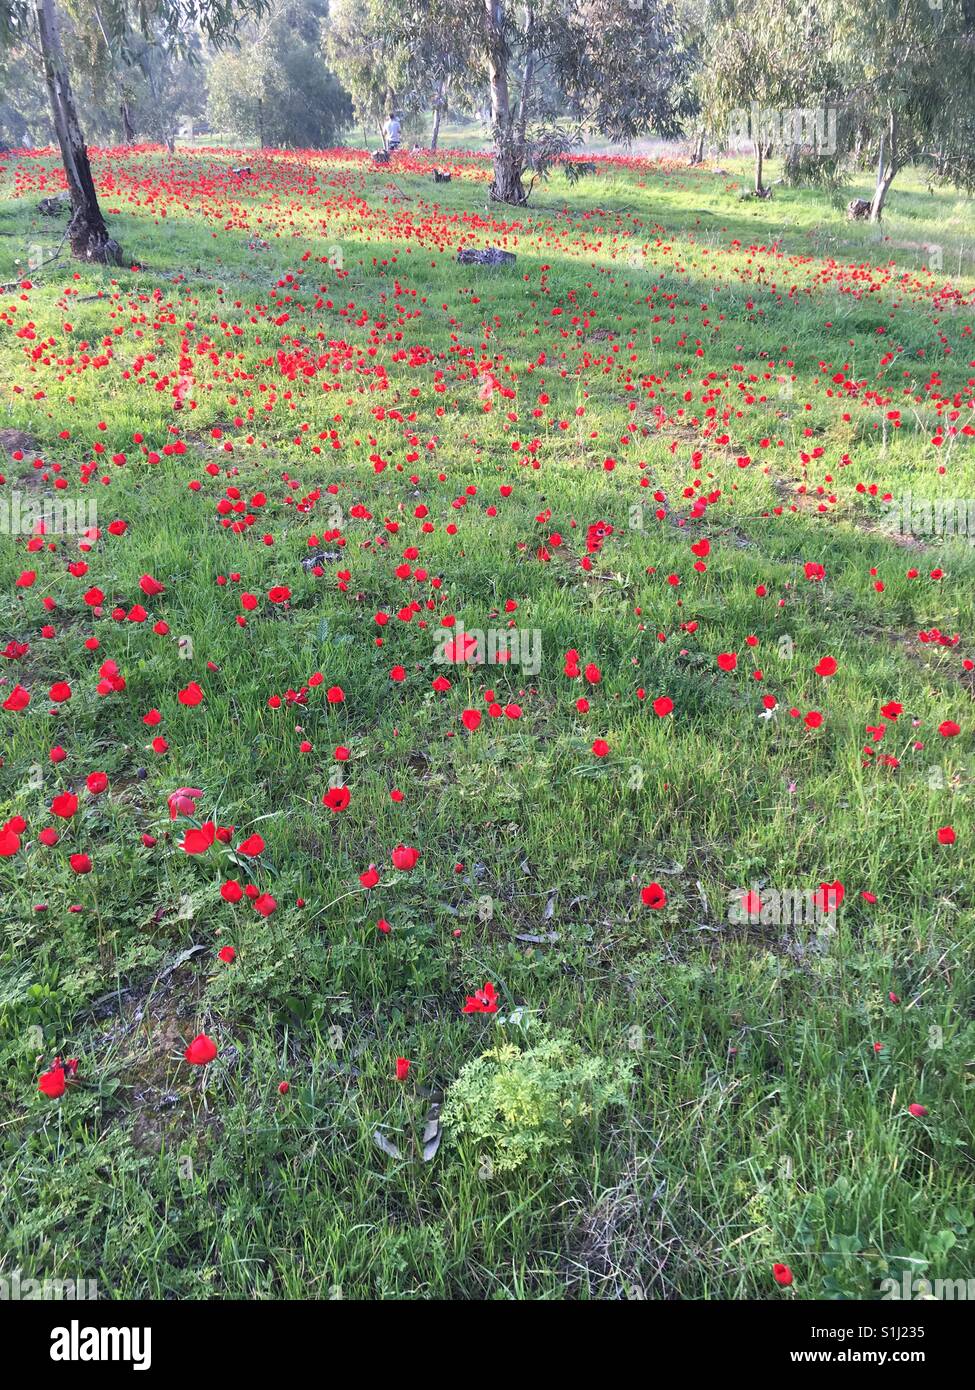 Darom Adom (rote Süd) Festival in Israel die tritt während der Blüte der roten Anemone Blumen Stockfoto